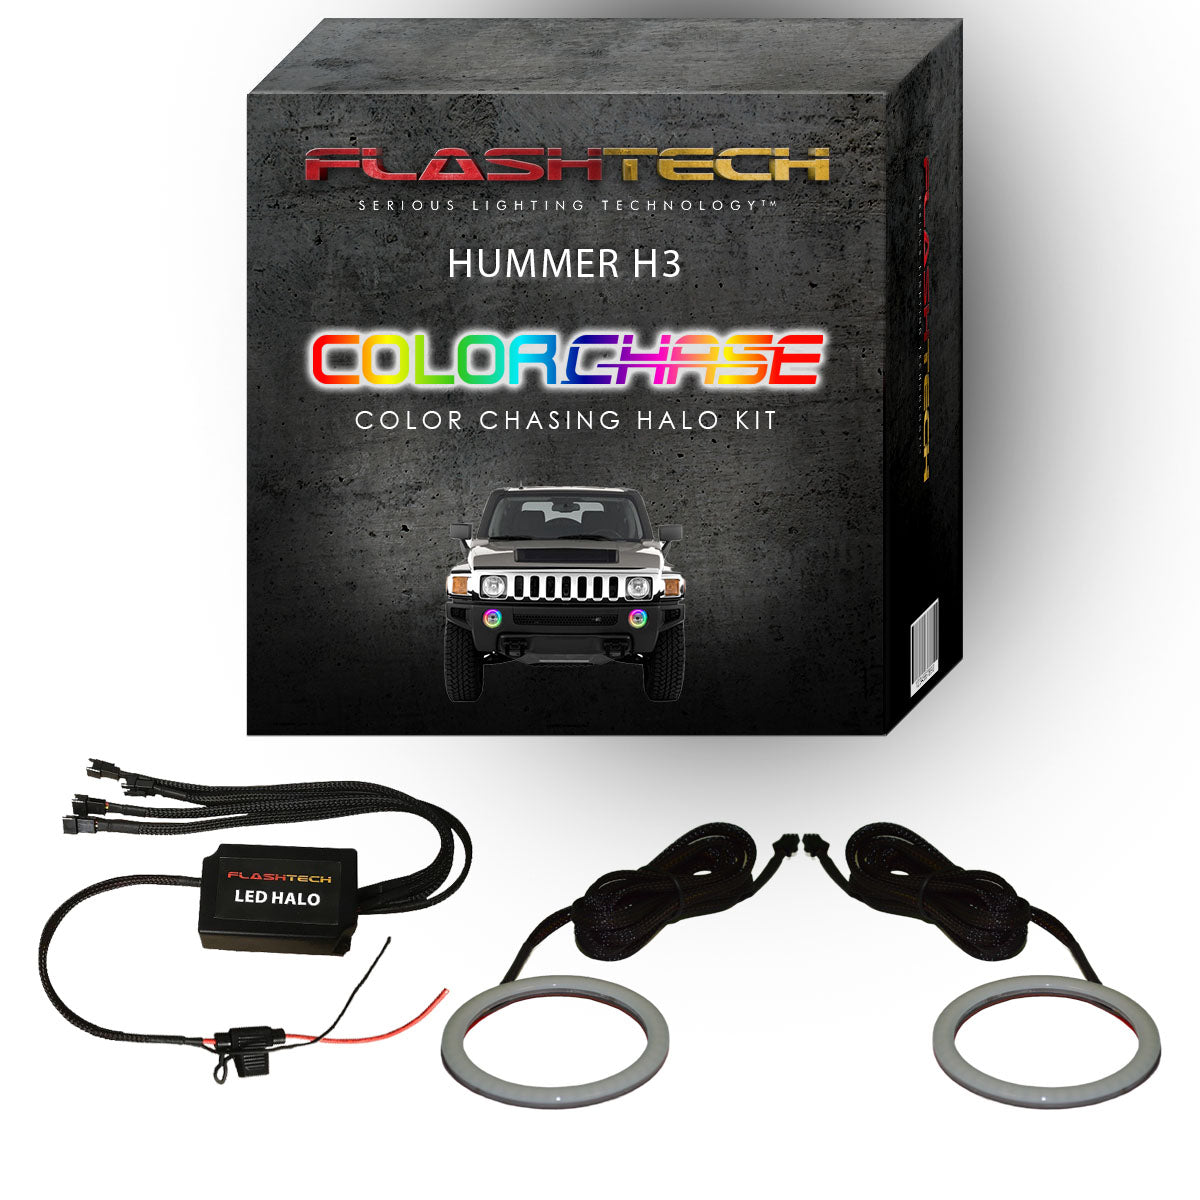 Hummer H3 ColorChase LED Halo Fog Light Kit 2006-2010